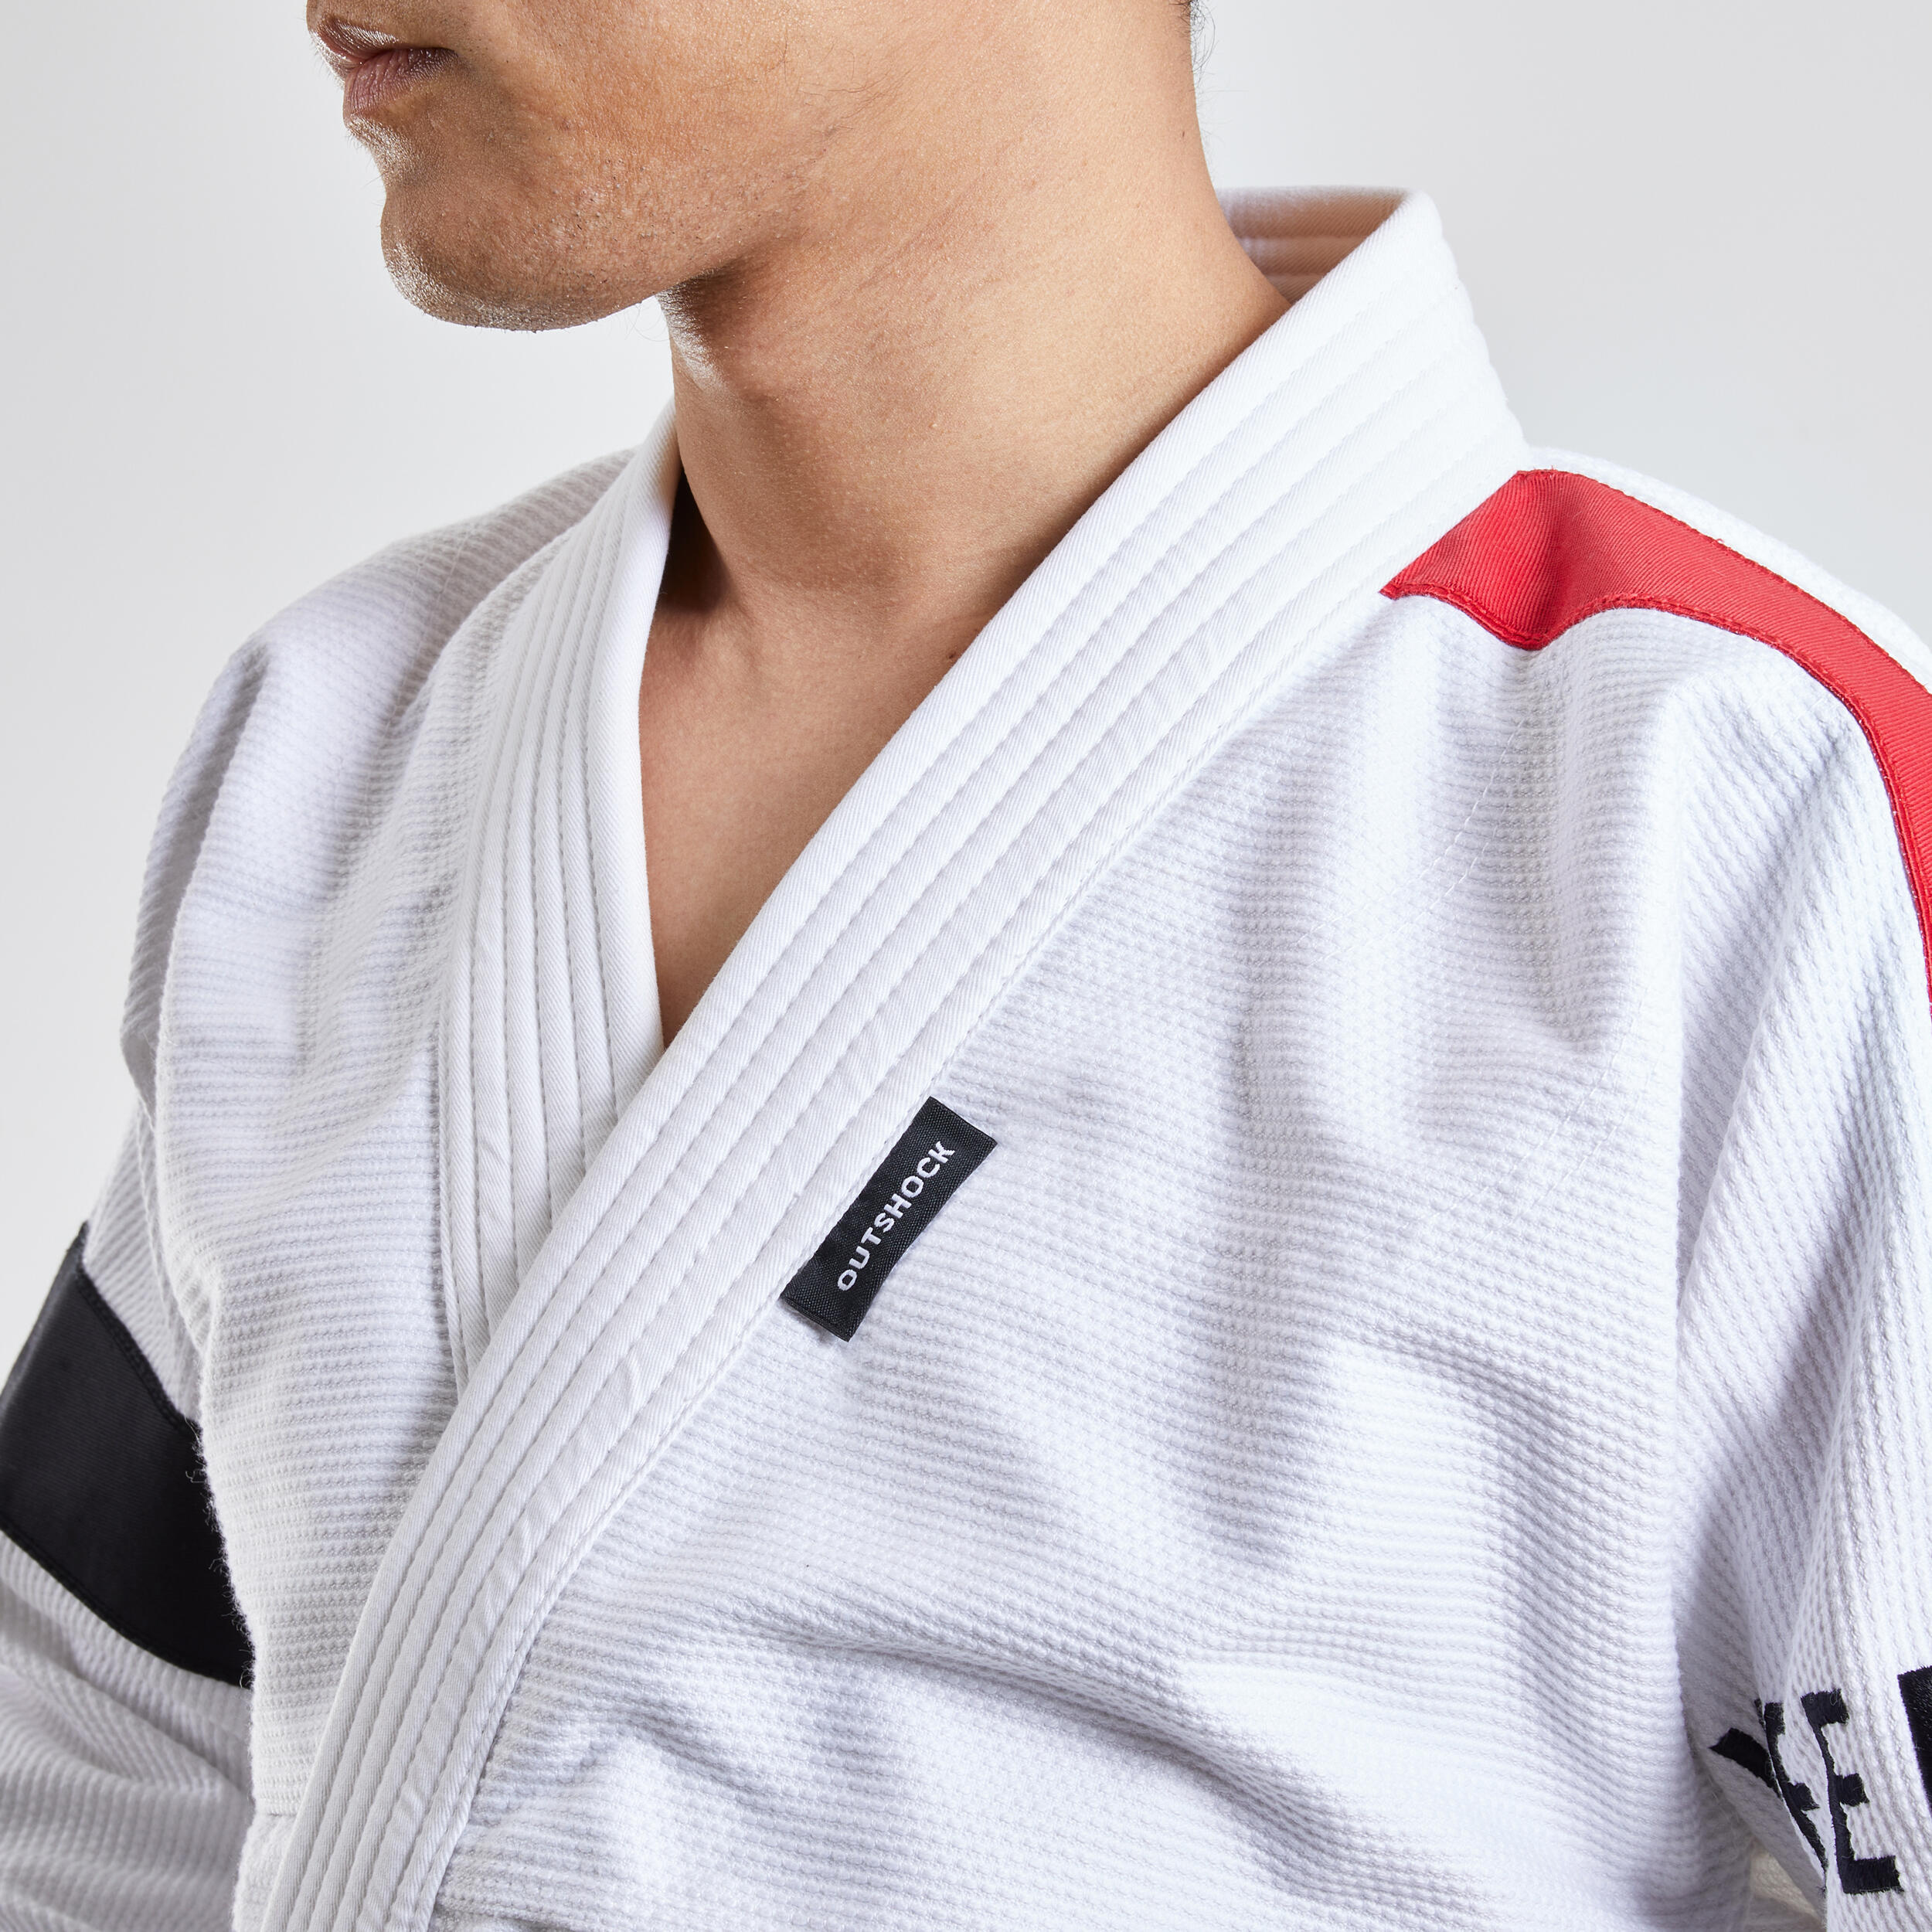 500 Brazilian Jiu-Jitsu Uniform - White 5/9